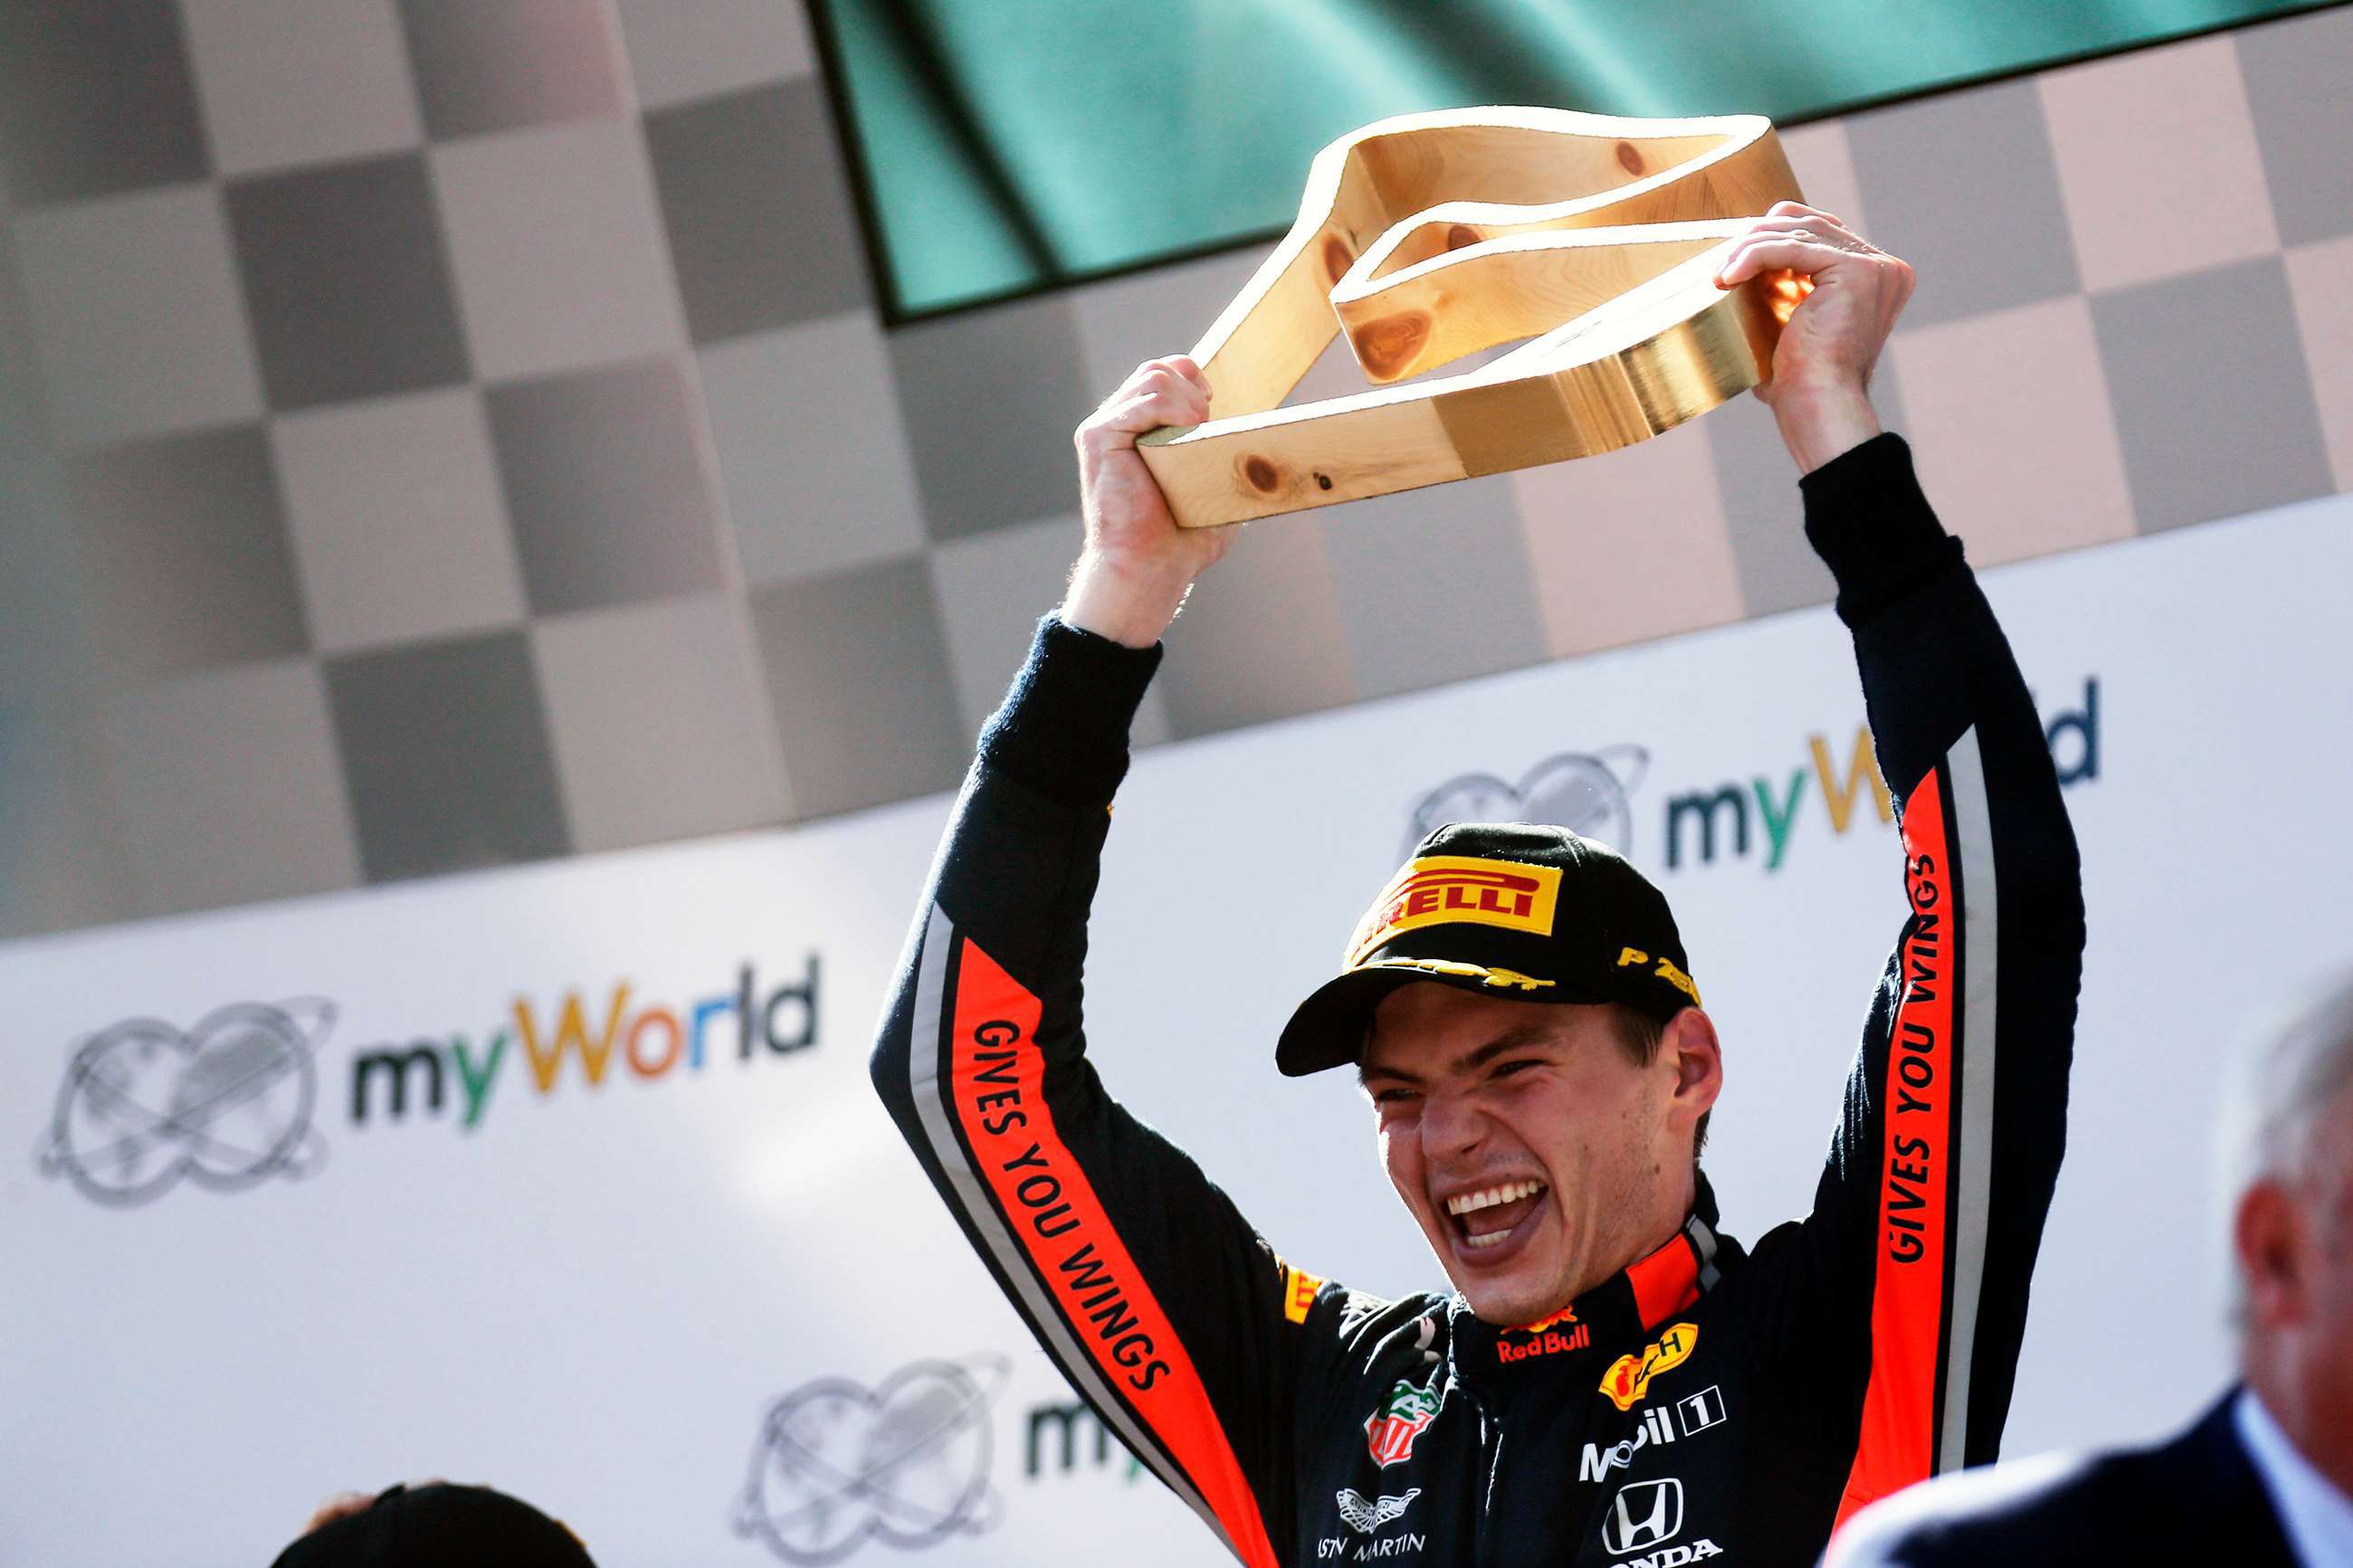 f1-2019-austria-max-verstappen-win-podium-joe-portlock-motorsport-images-goodwood-01072019.jpg